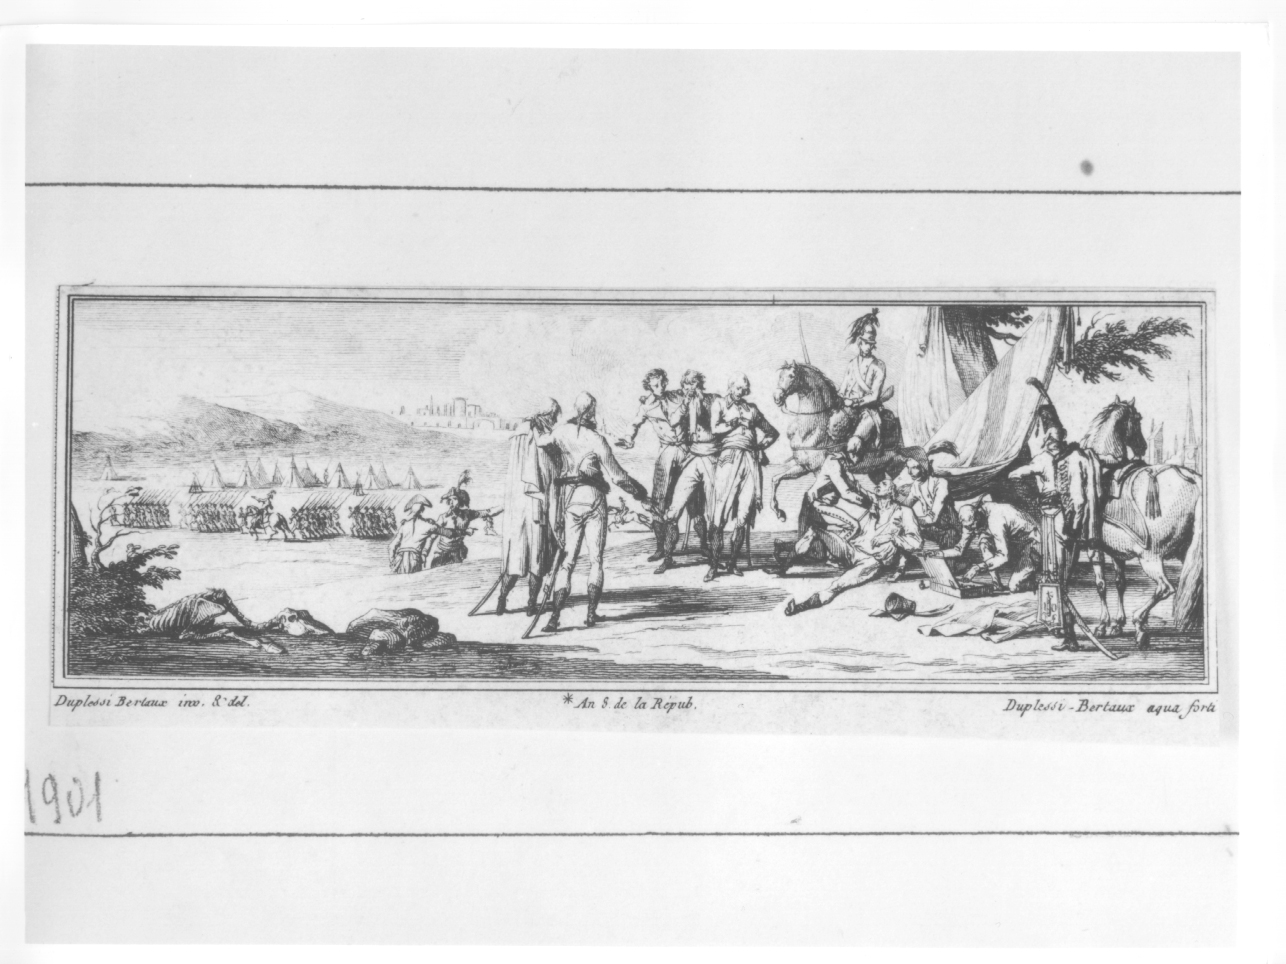 LA MORTE IN BATTAGLIA, soldato morente sul campo di battaglia (stampa) di Duplessi Bertaux Jean (secc. XVIII/ XIX)